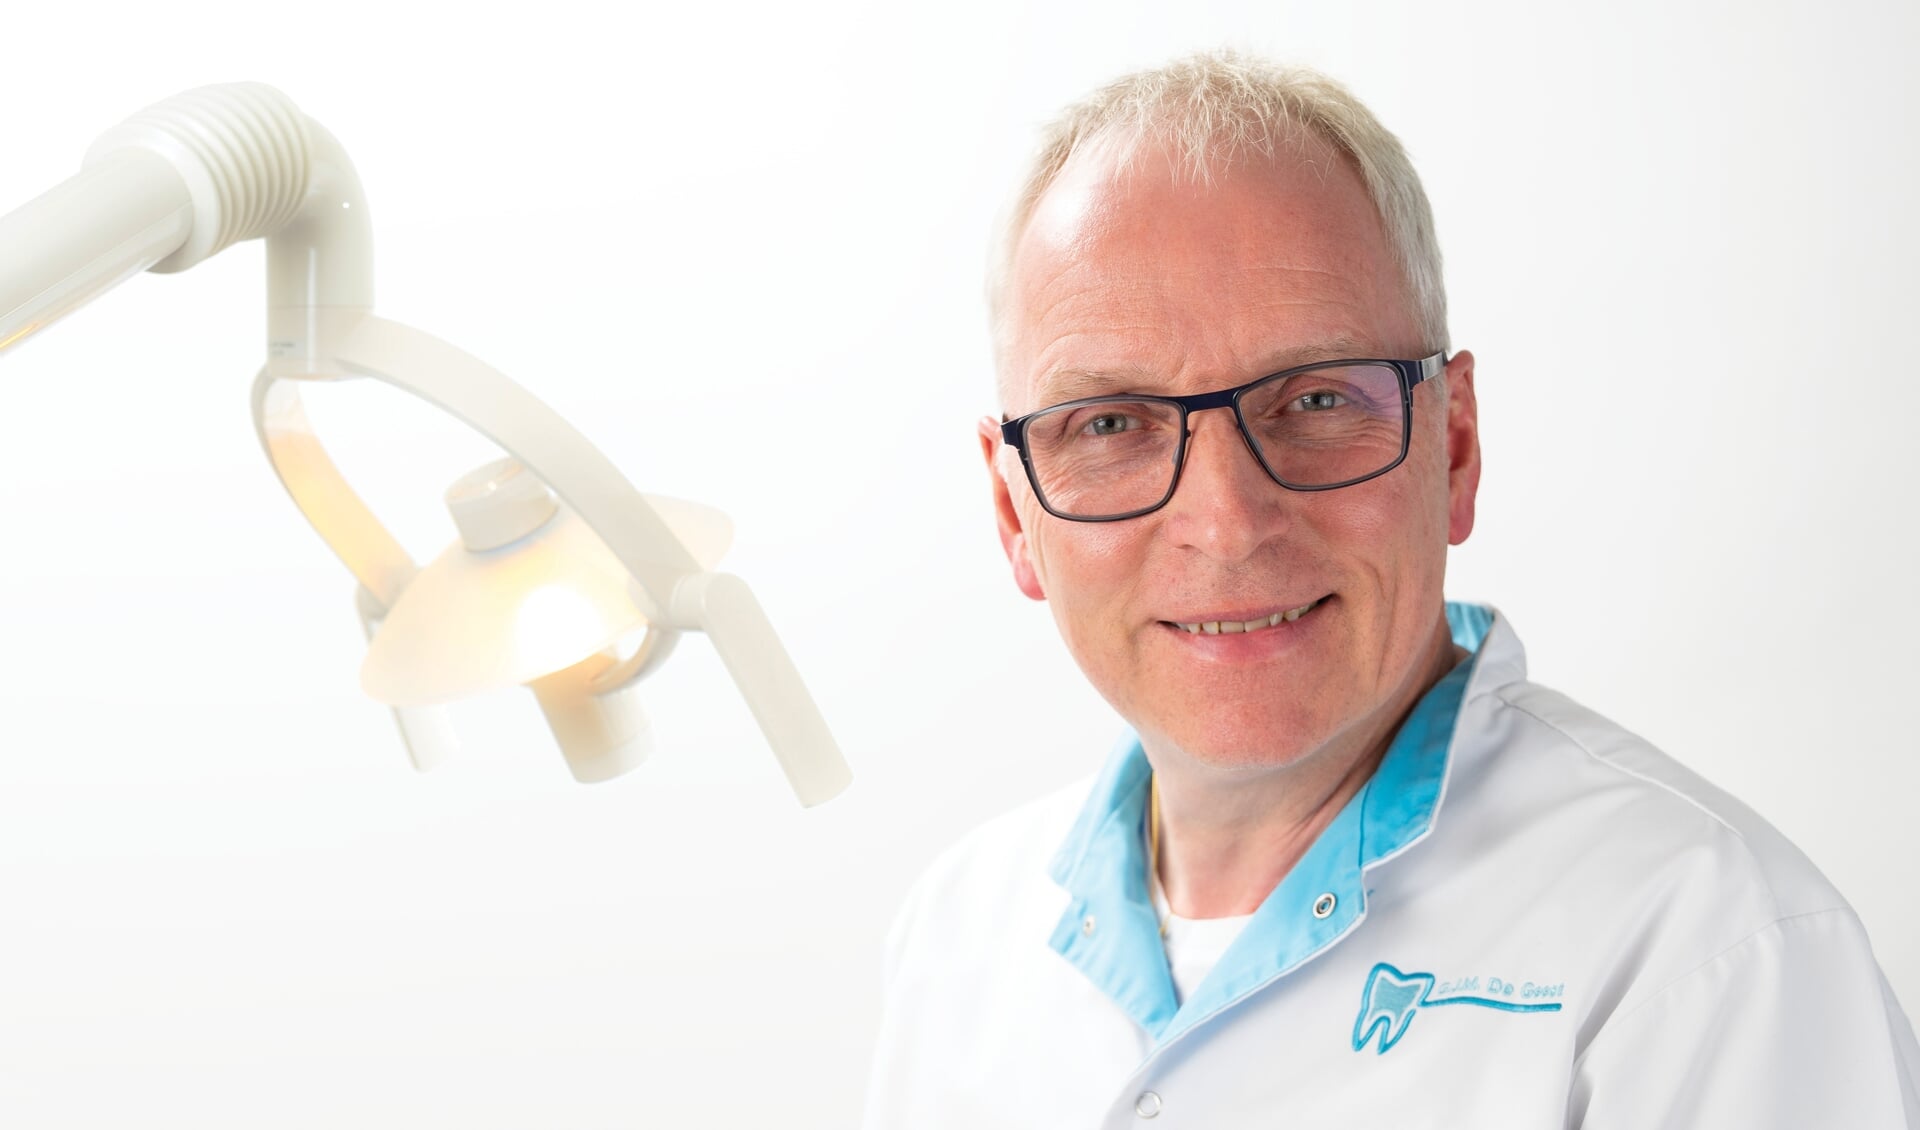 Ortho-tandarts De Geest werkt al twintig jaar tot ieders tevredenheid in Sommlesdijk.